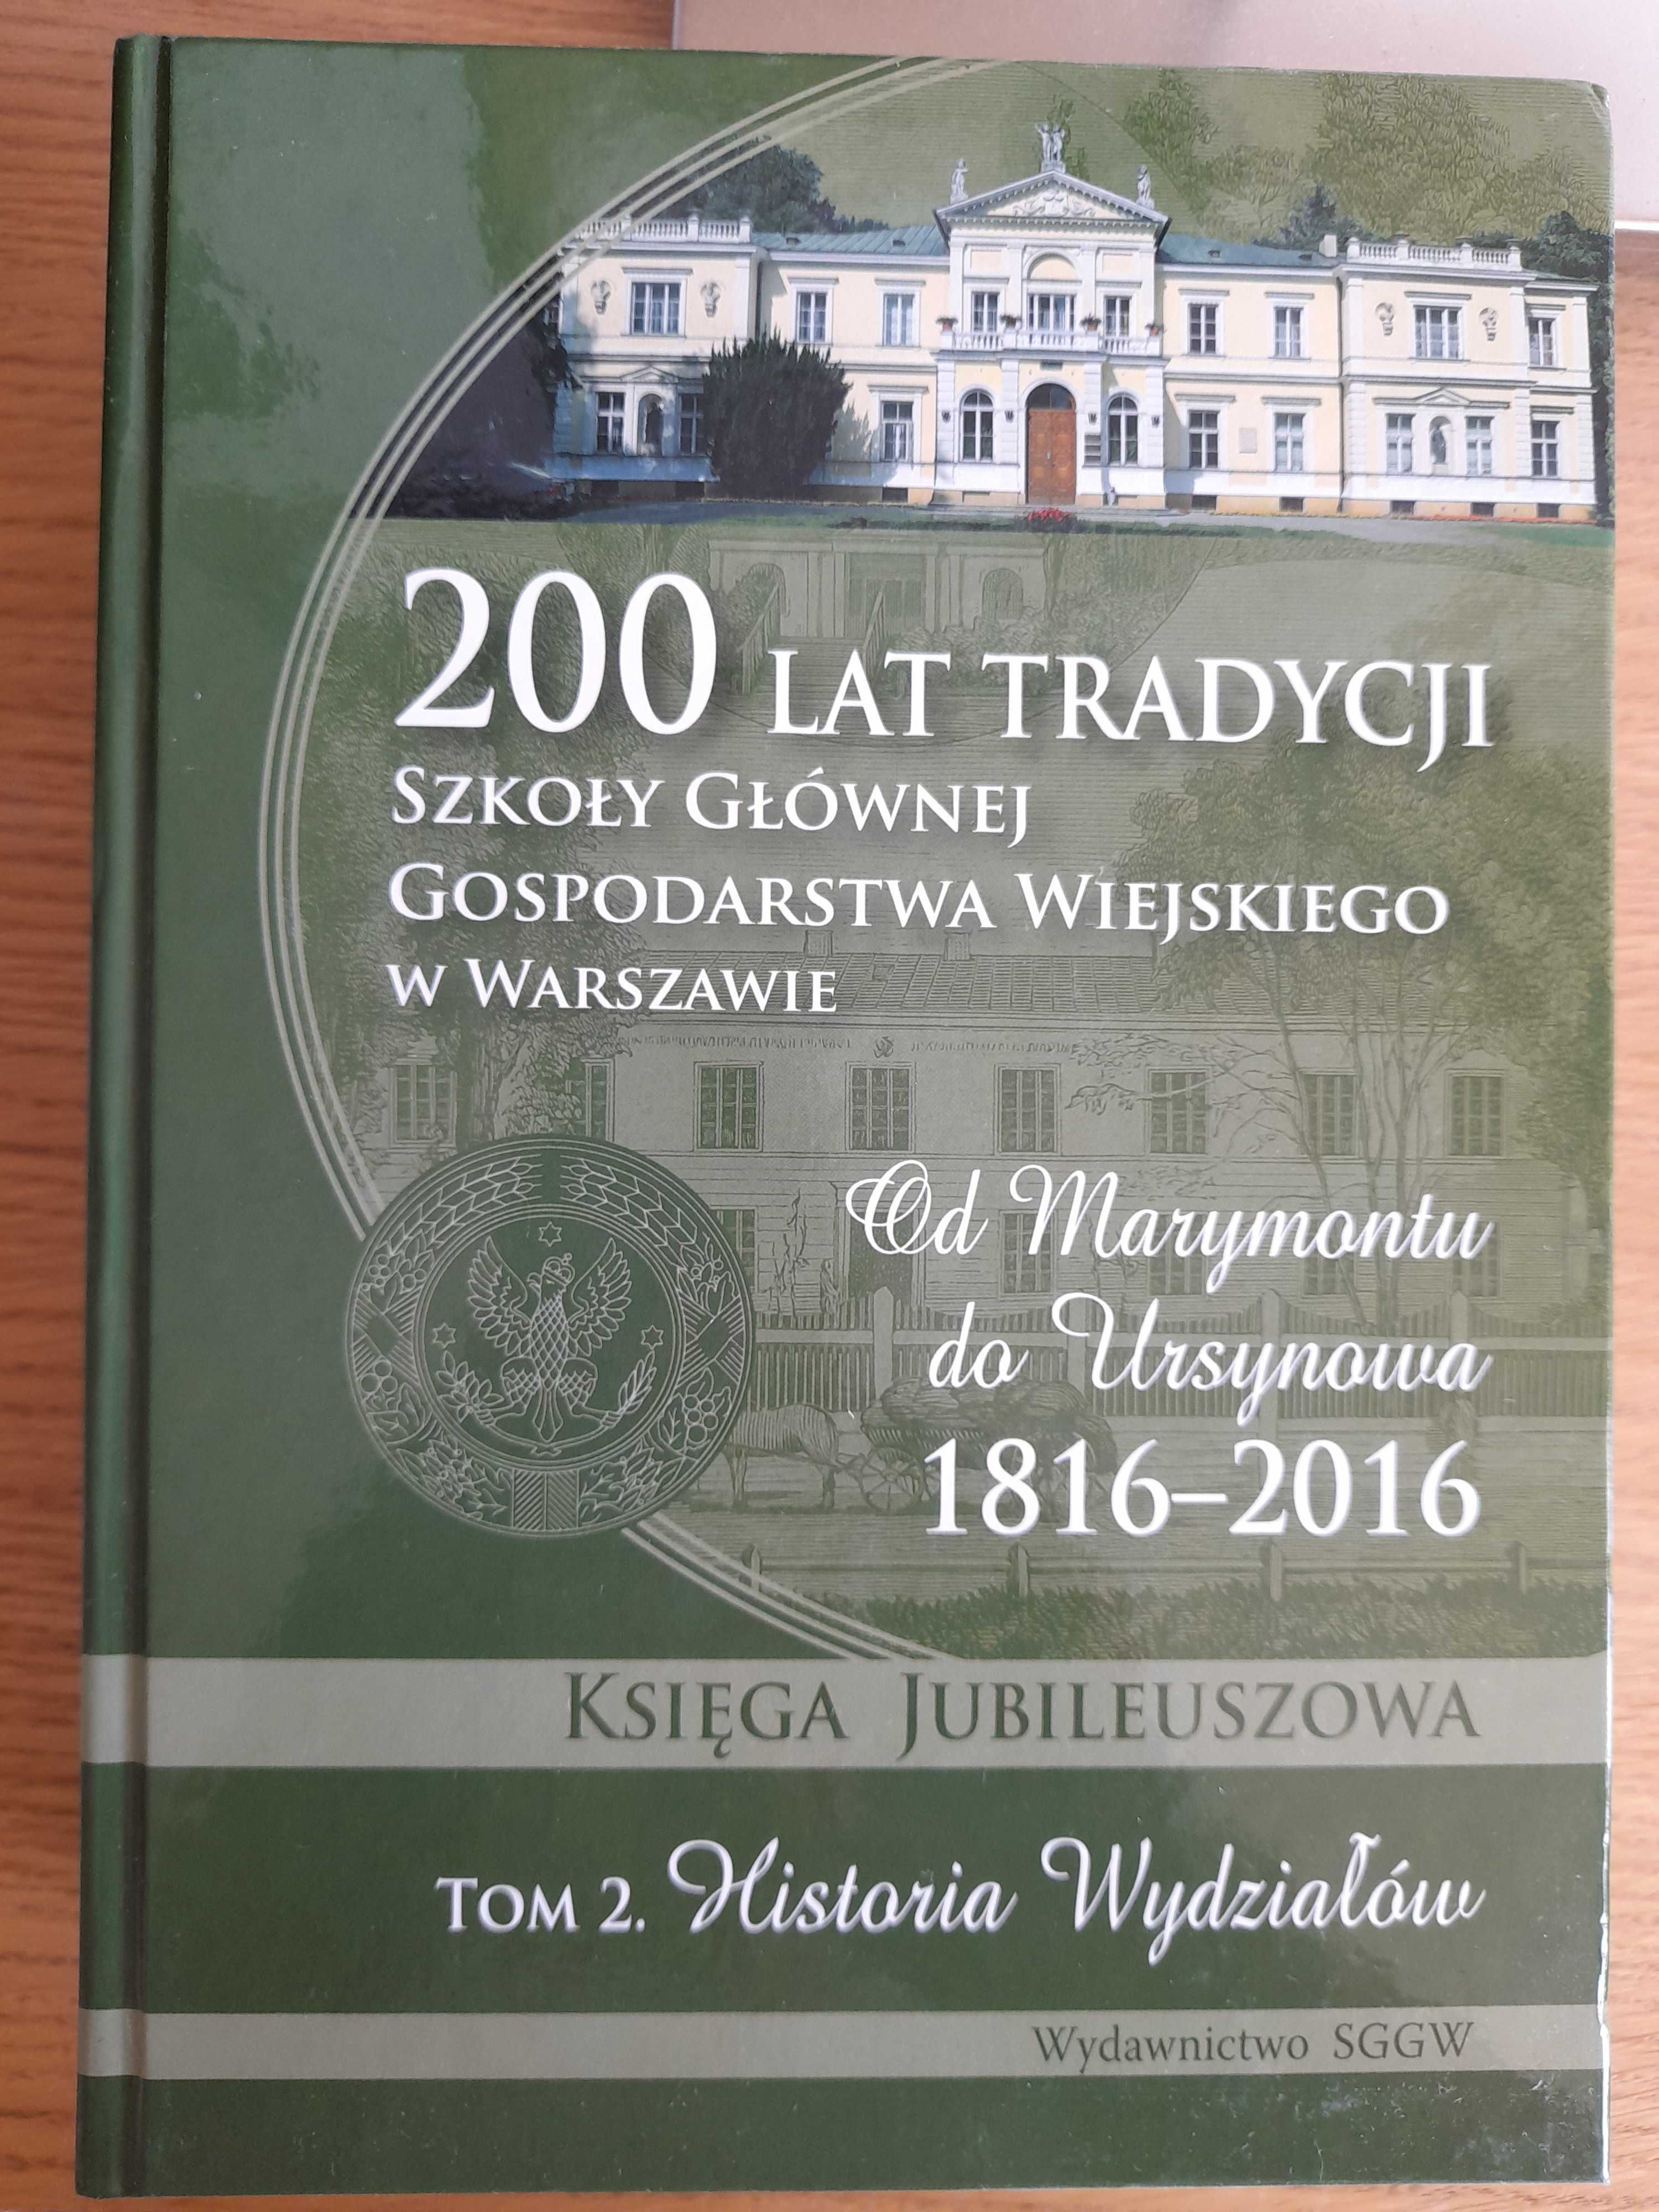 200 lat tradycji Szkoły Głównej Gospodarstwa Wiejskiego, t. 1 i 2 SGGW